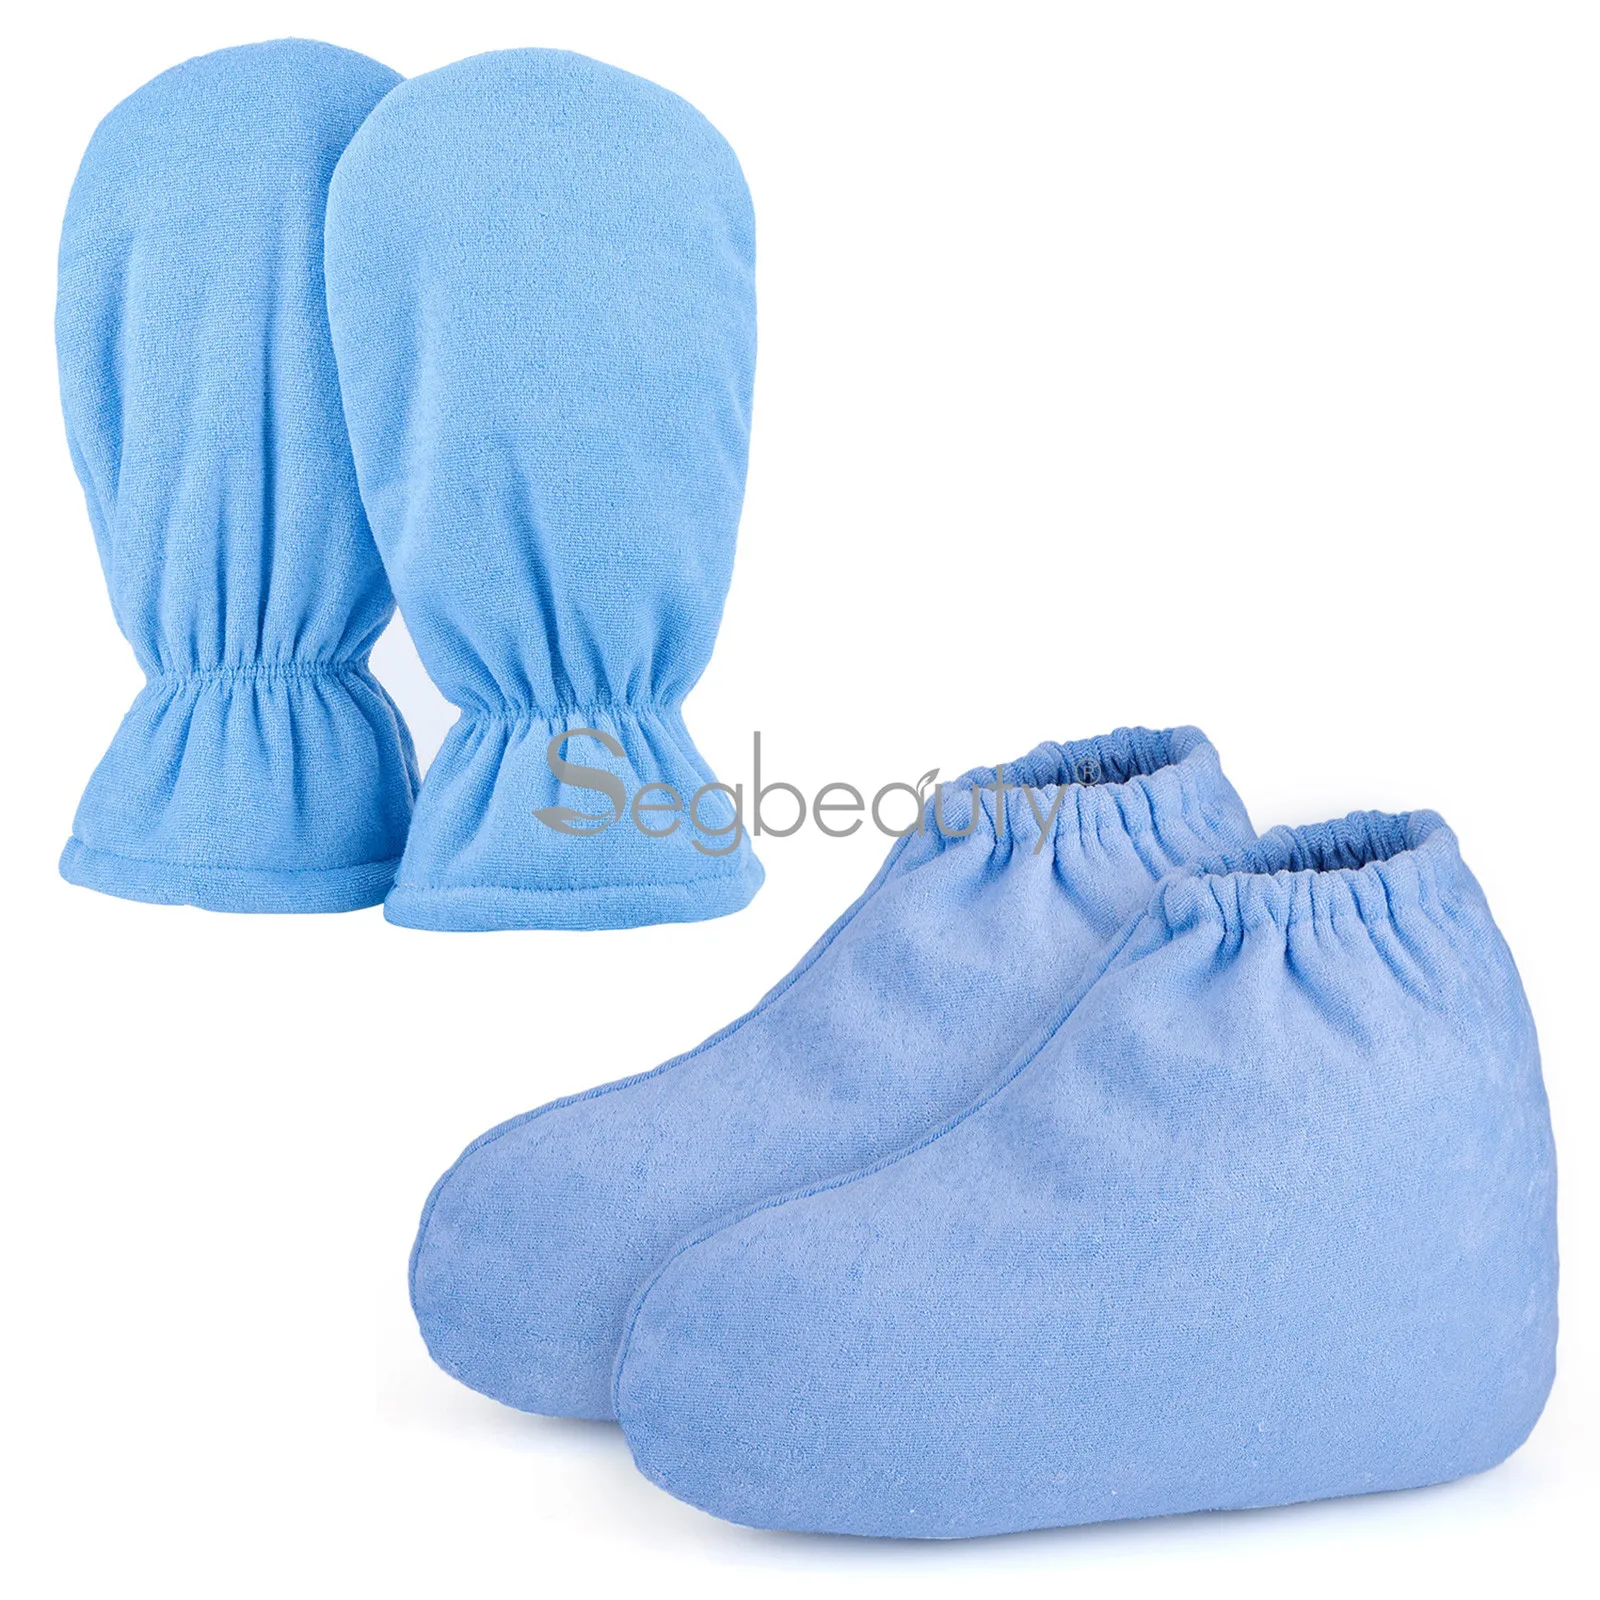 Защитные парафиновые восковые перчатки для спа-ванны Segbeauty и варежки